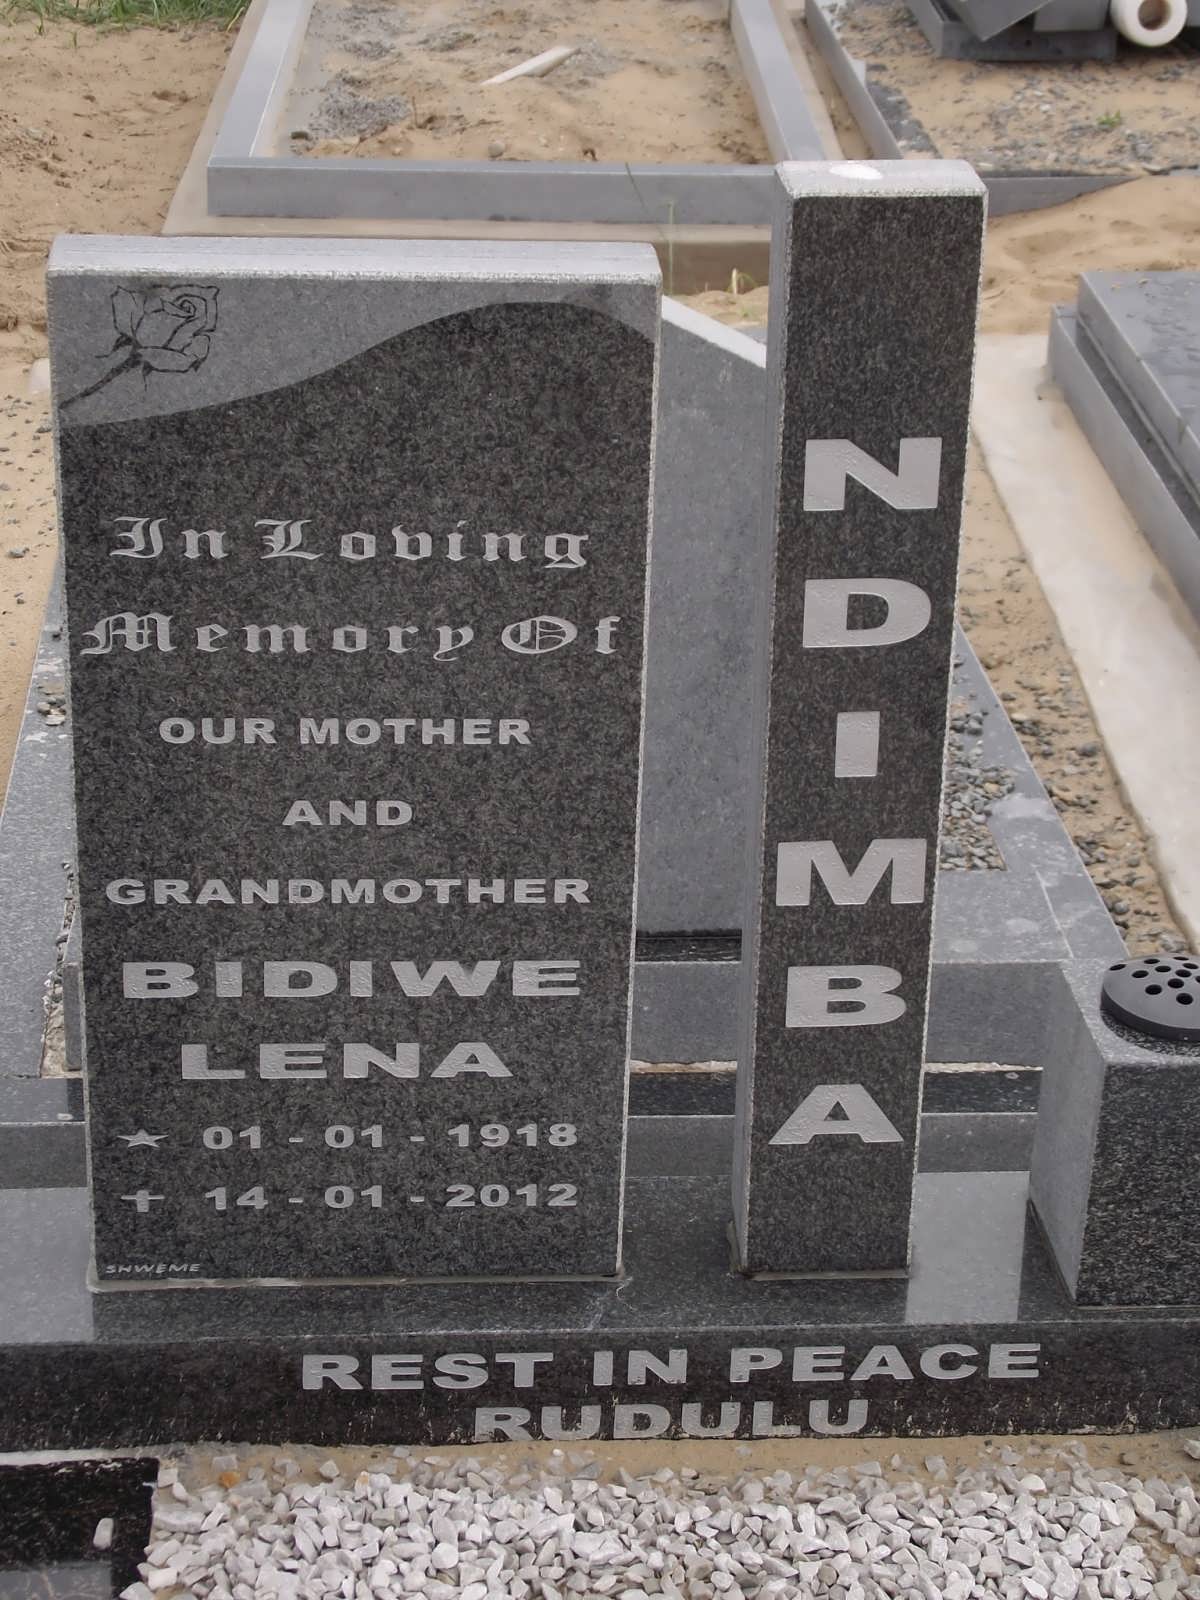 NDIMBA Bidiwe Lena 1918-2012